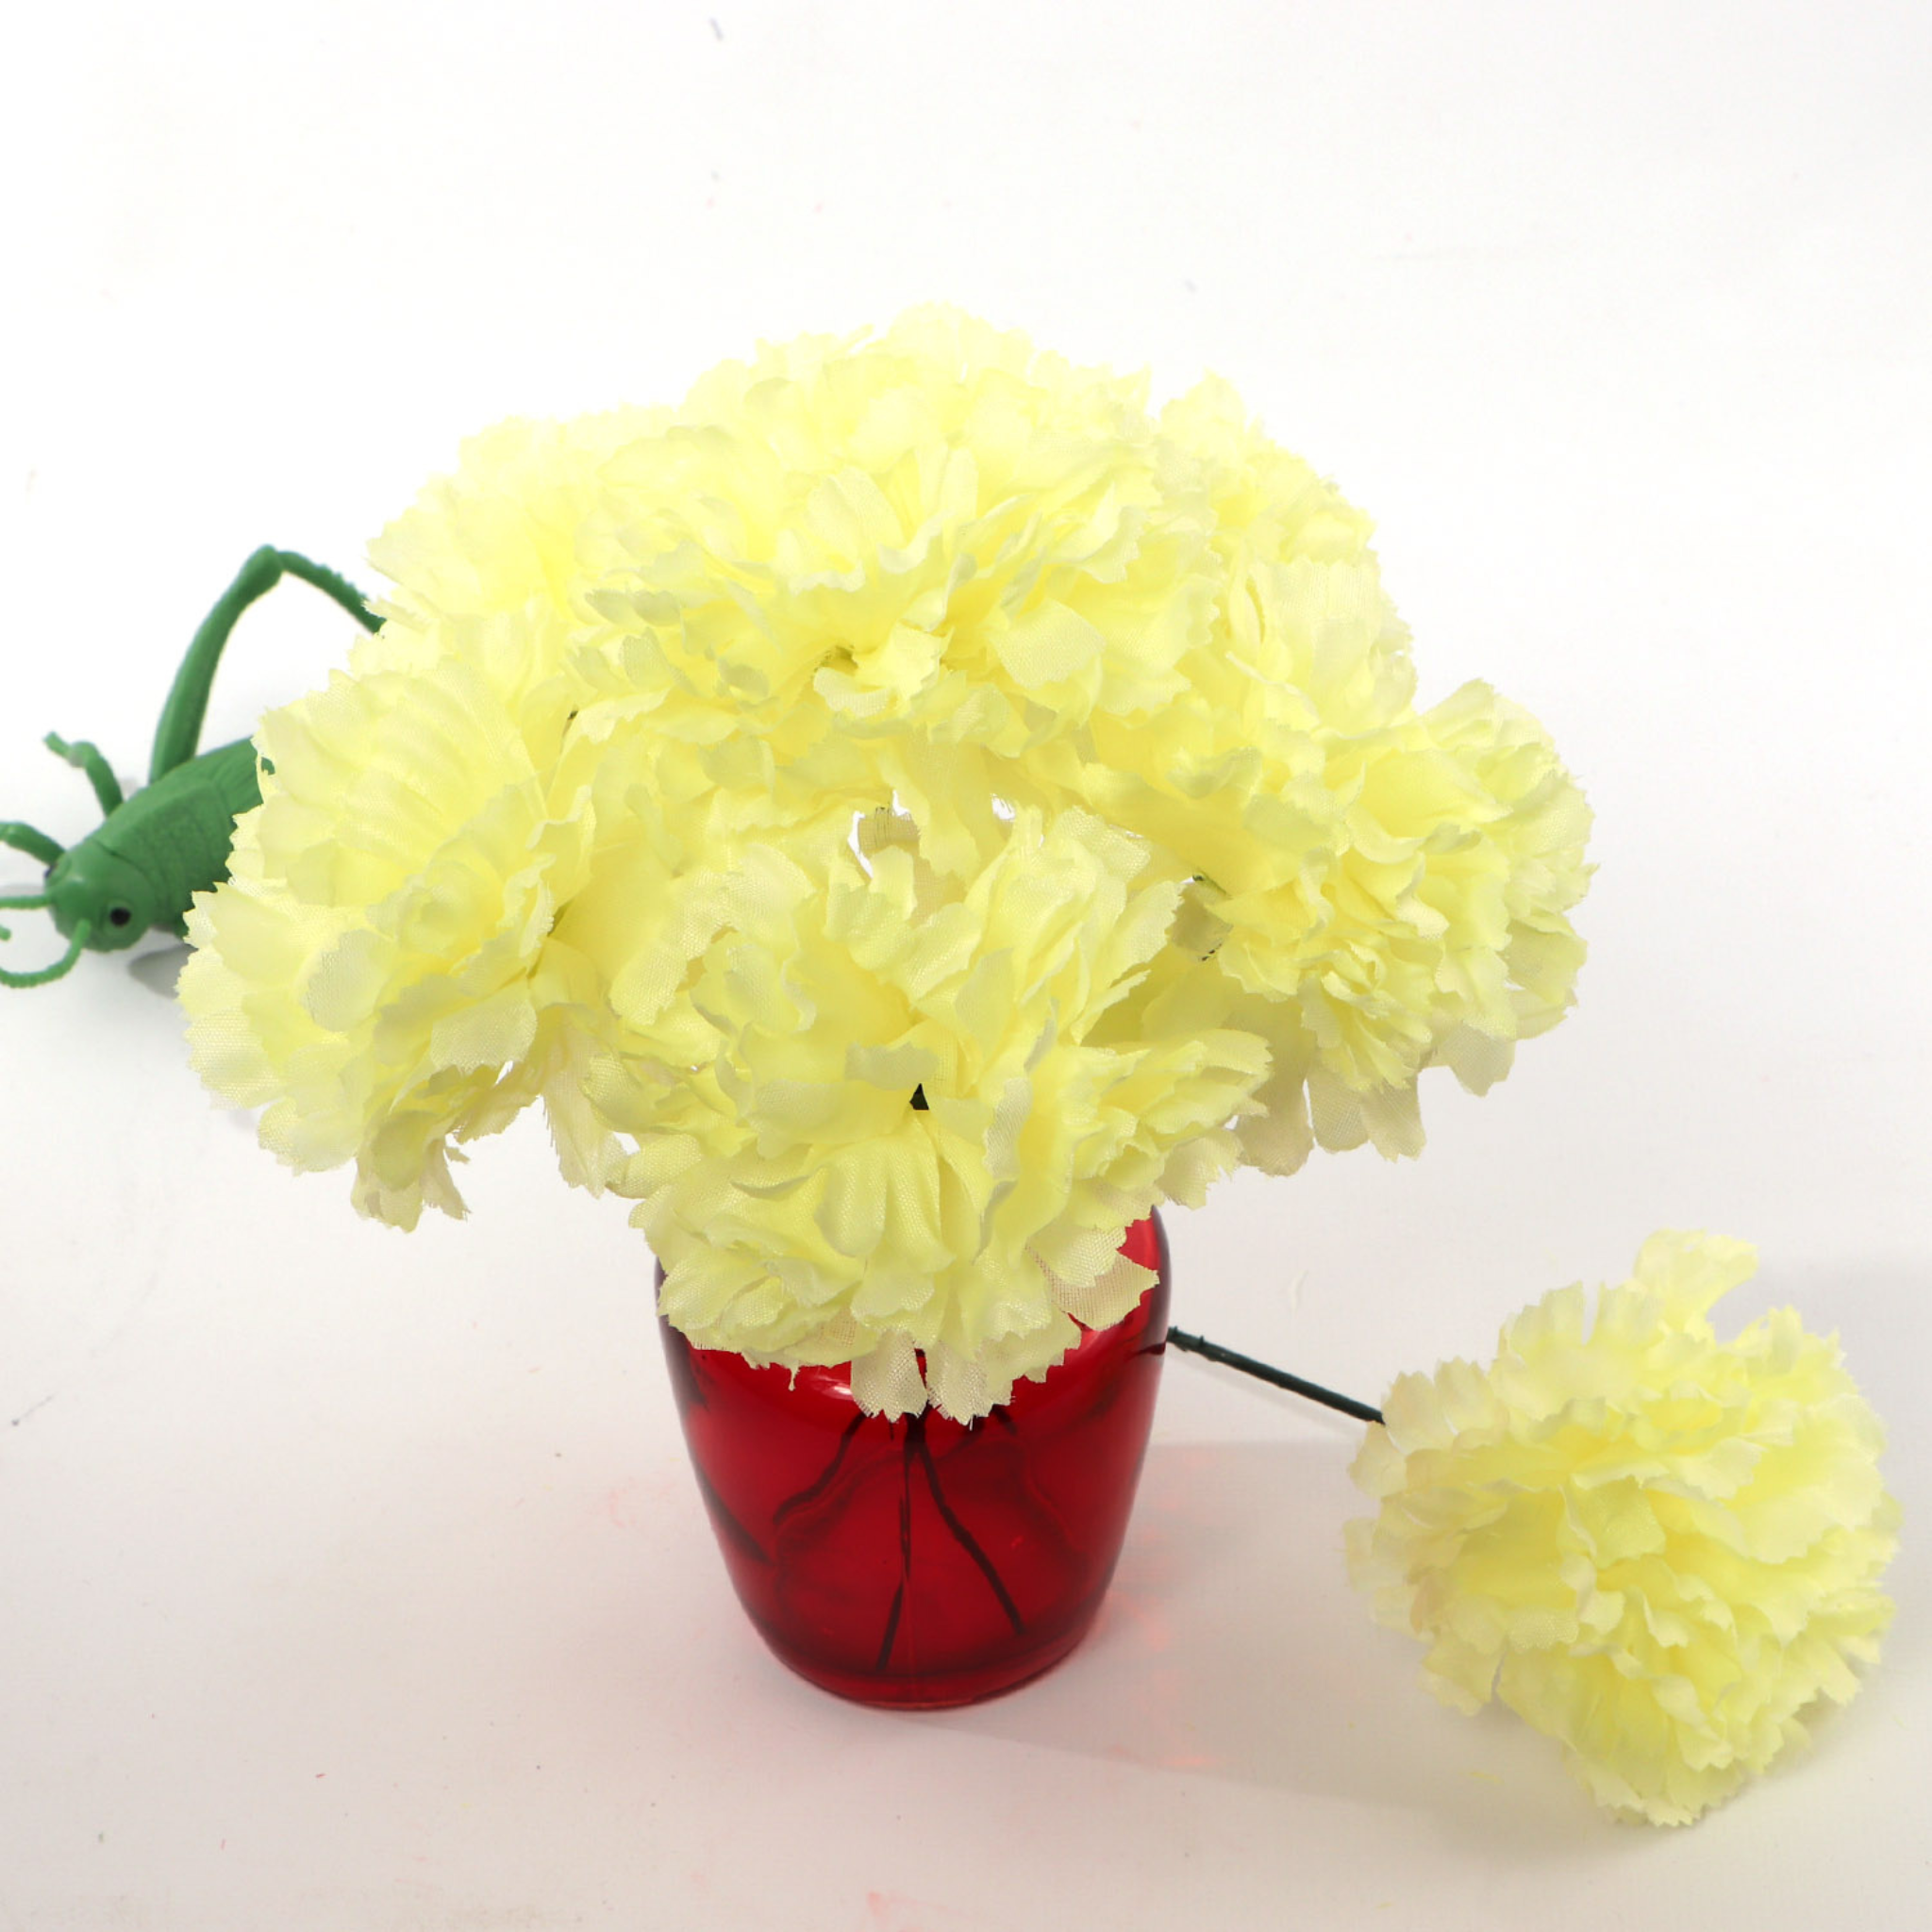 Light Yellow Silk Carnation Picks - 3.5" Flower Heads & 5" Stems